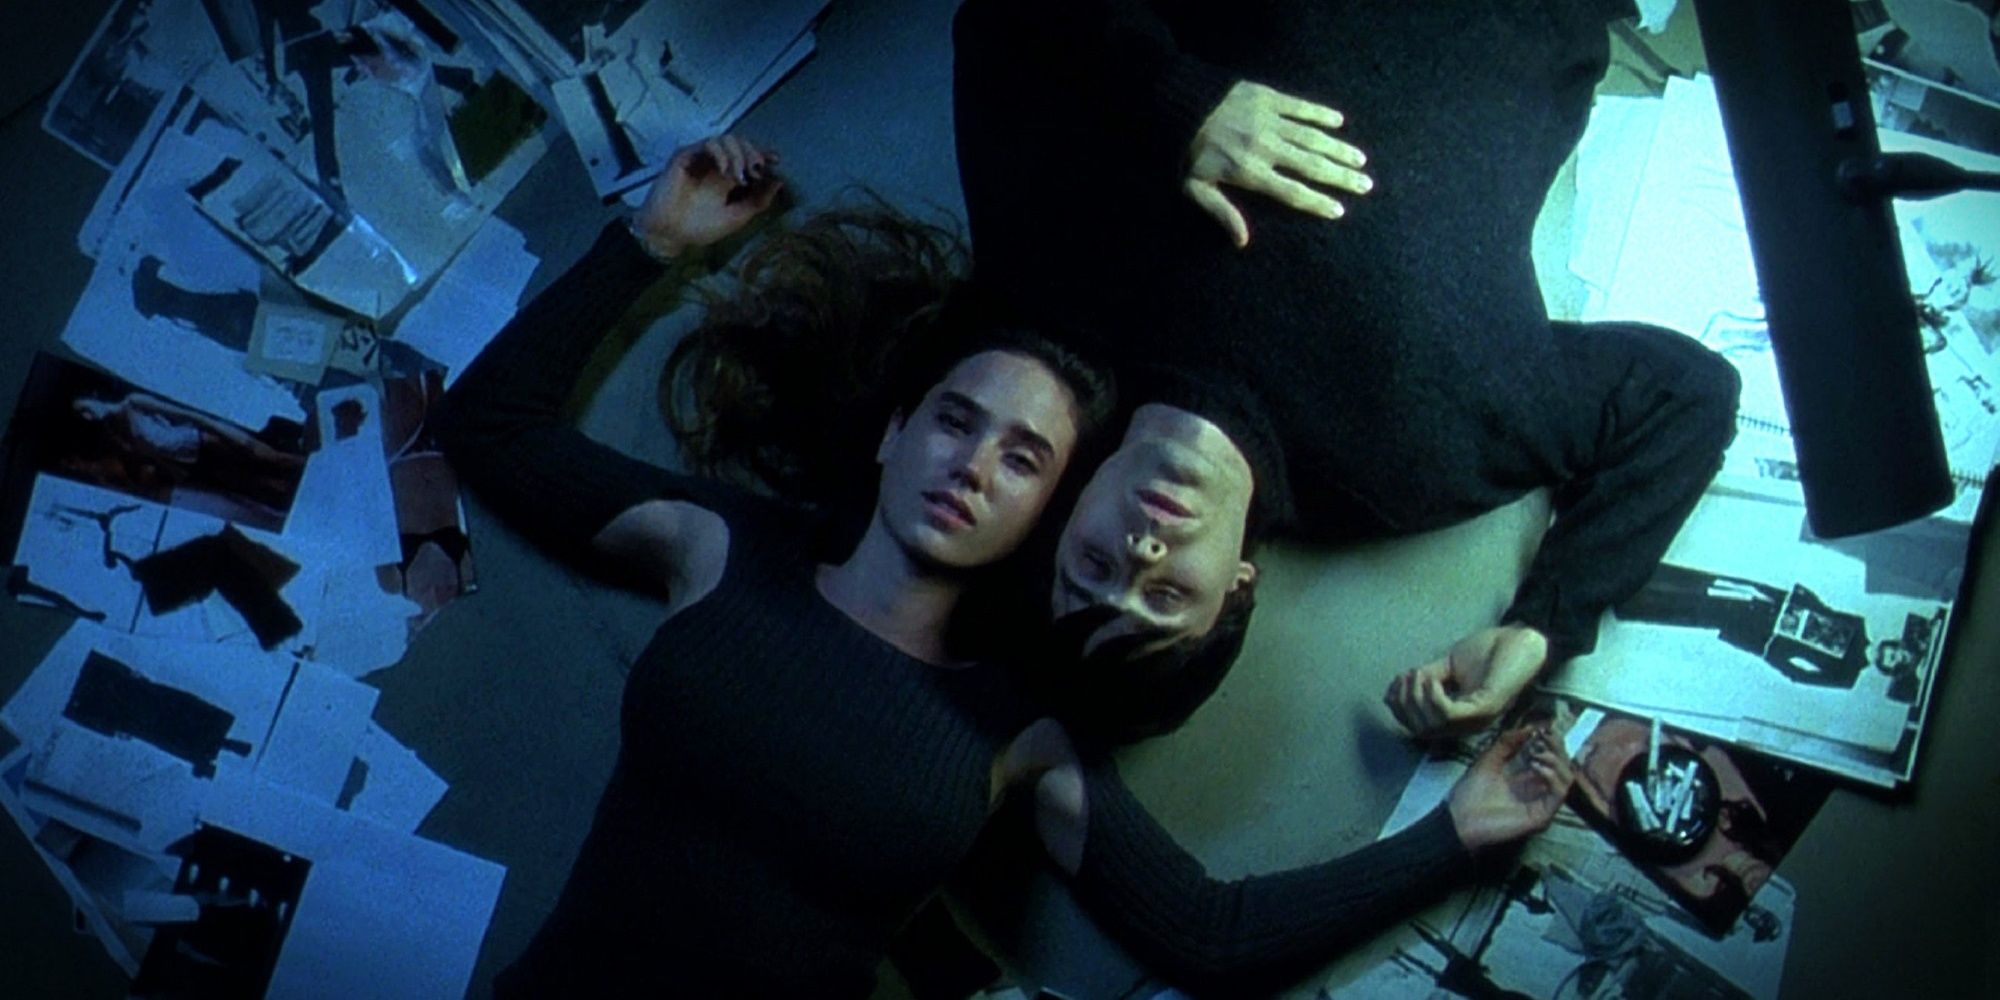 Harry e Marion estavam deitados no chão em Requiem para um sonho.